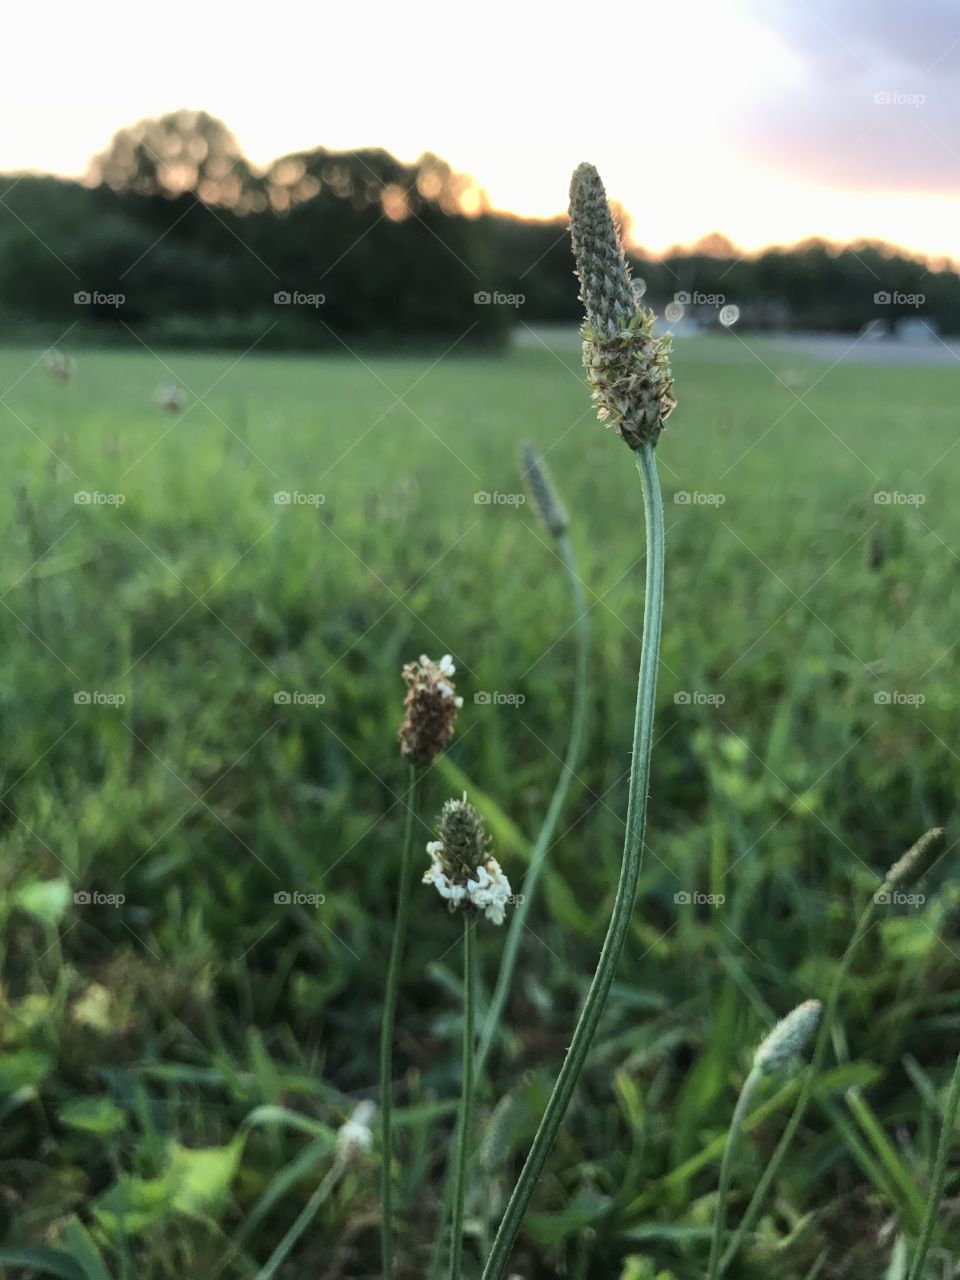 Wildflower in grassy field